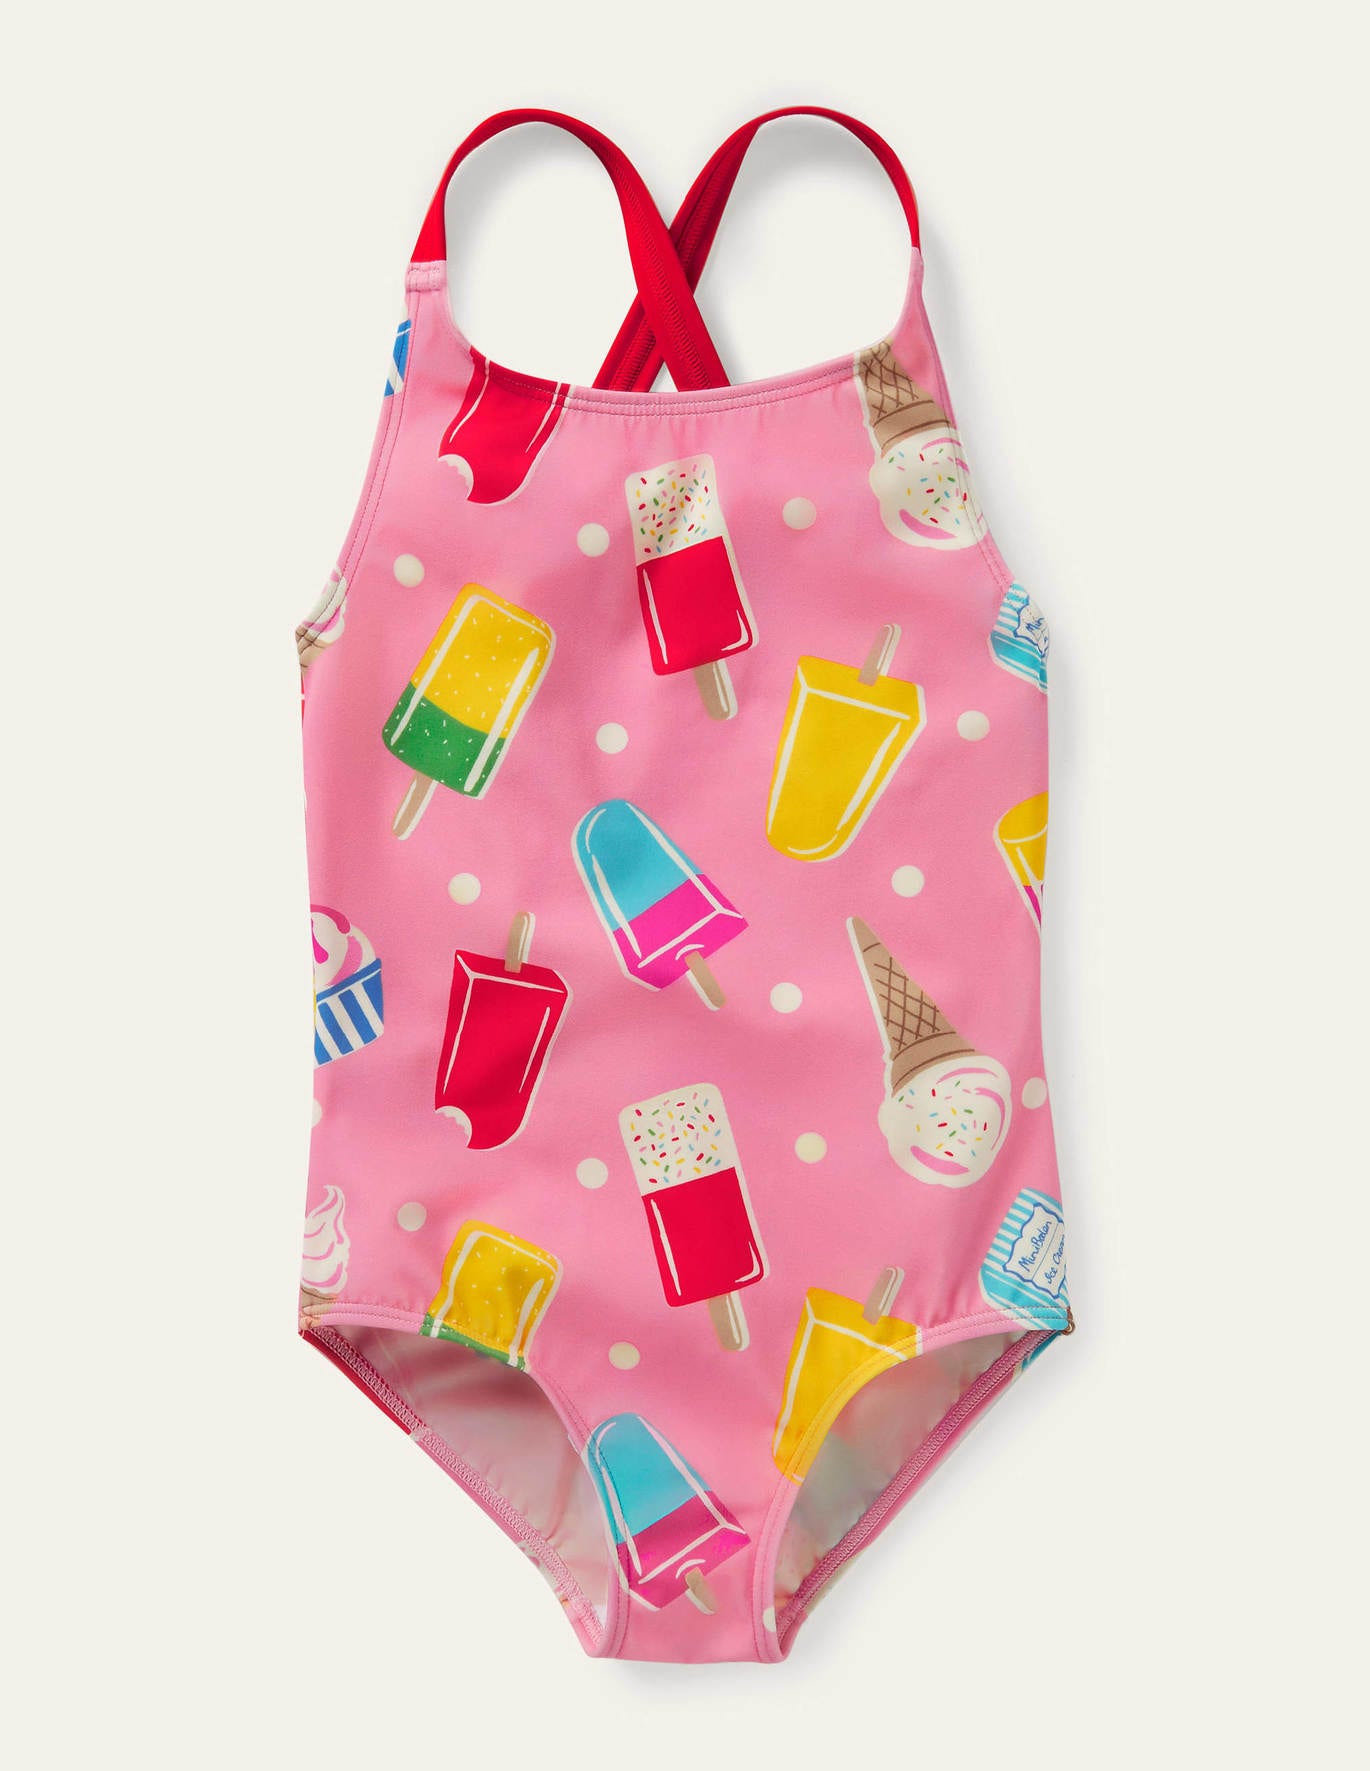 Boden Cross-back Printed Swimsuit - Pink Lemonade Ice Cream Spot